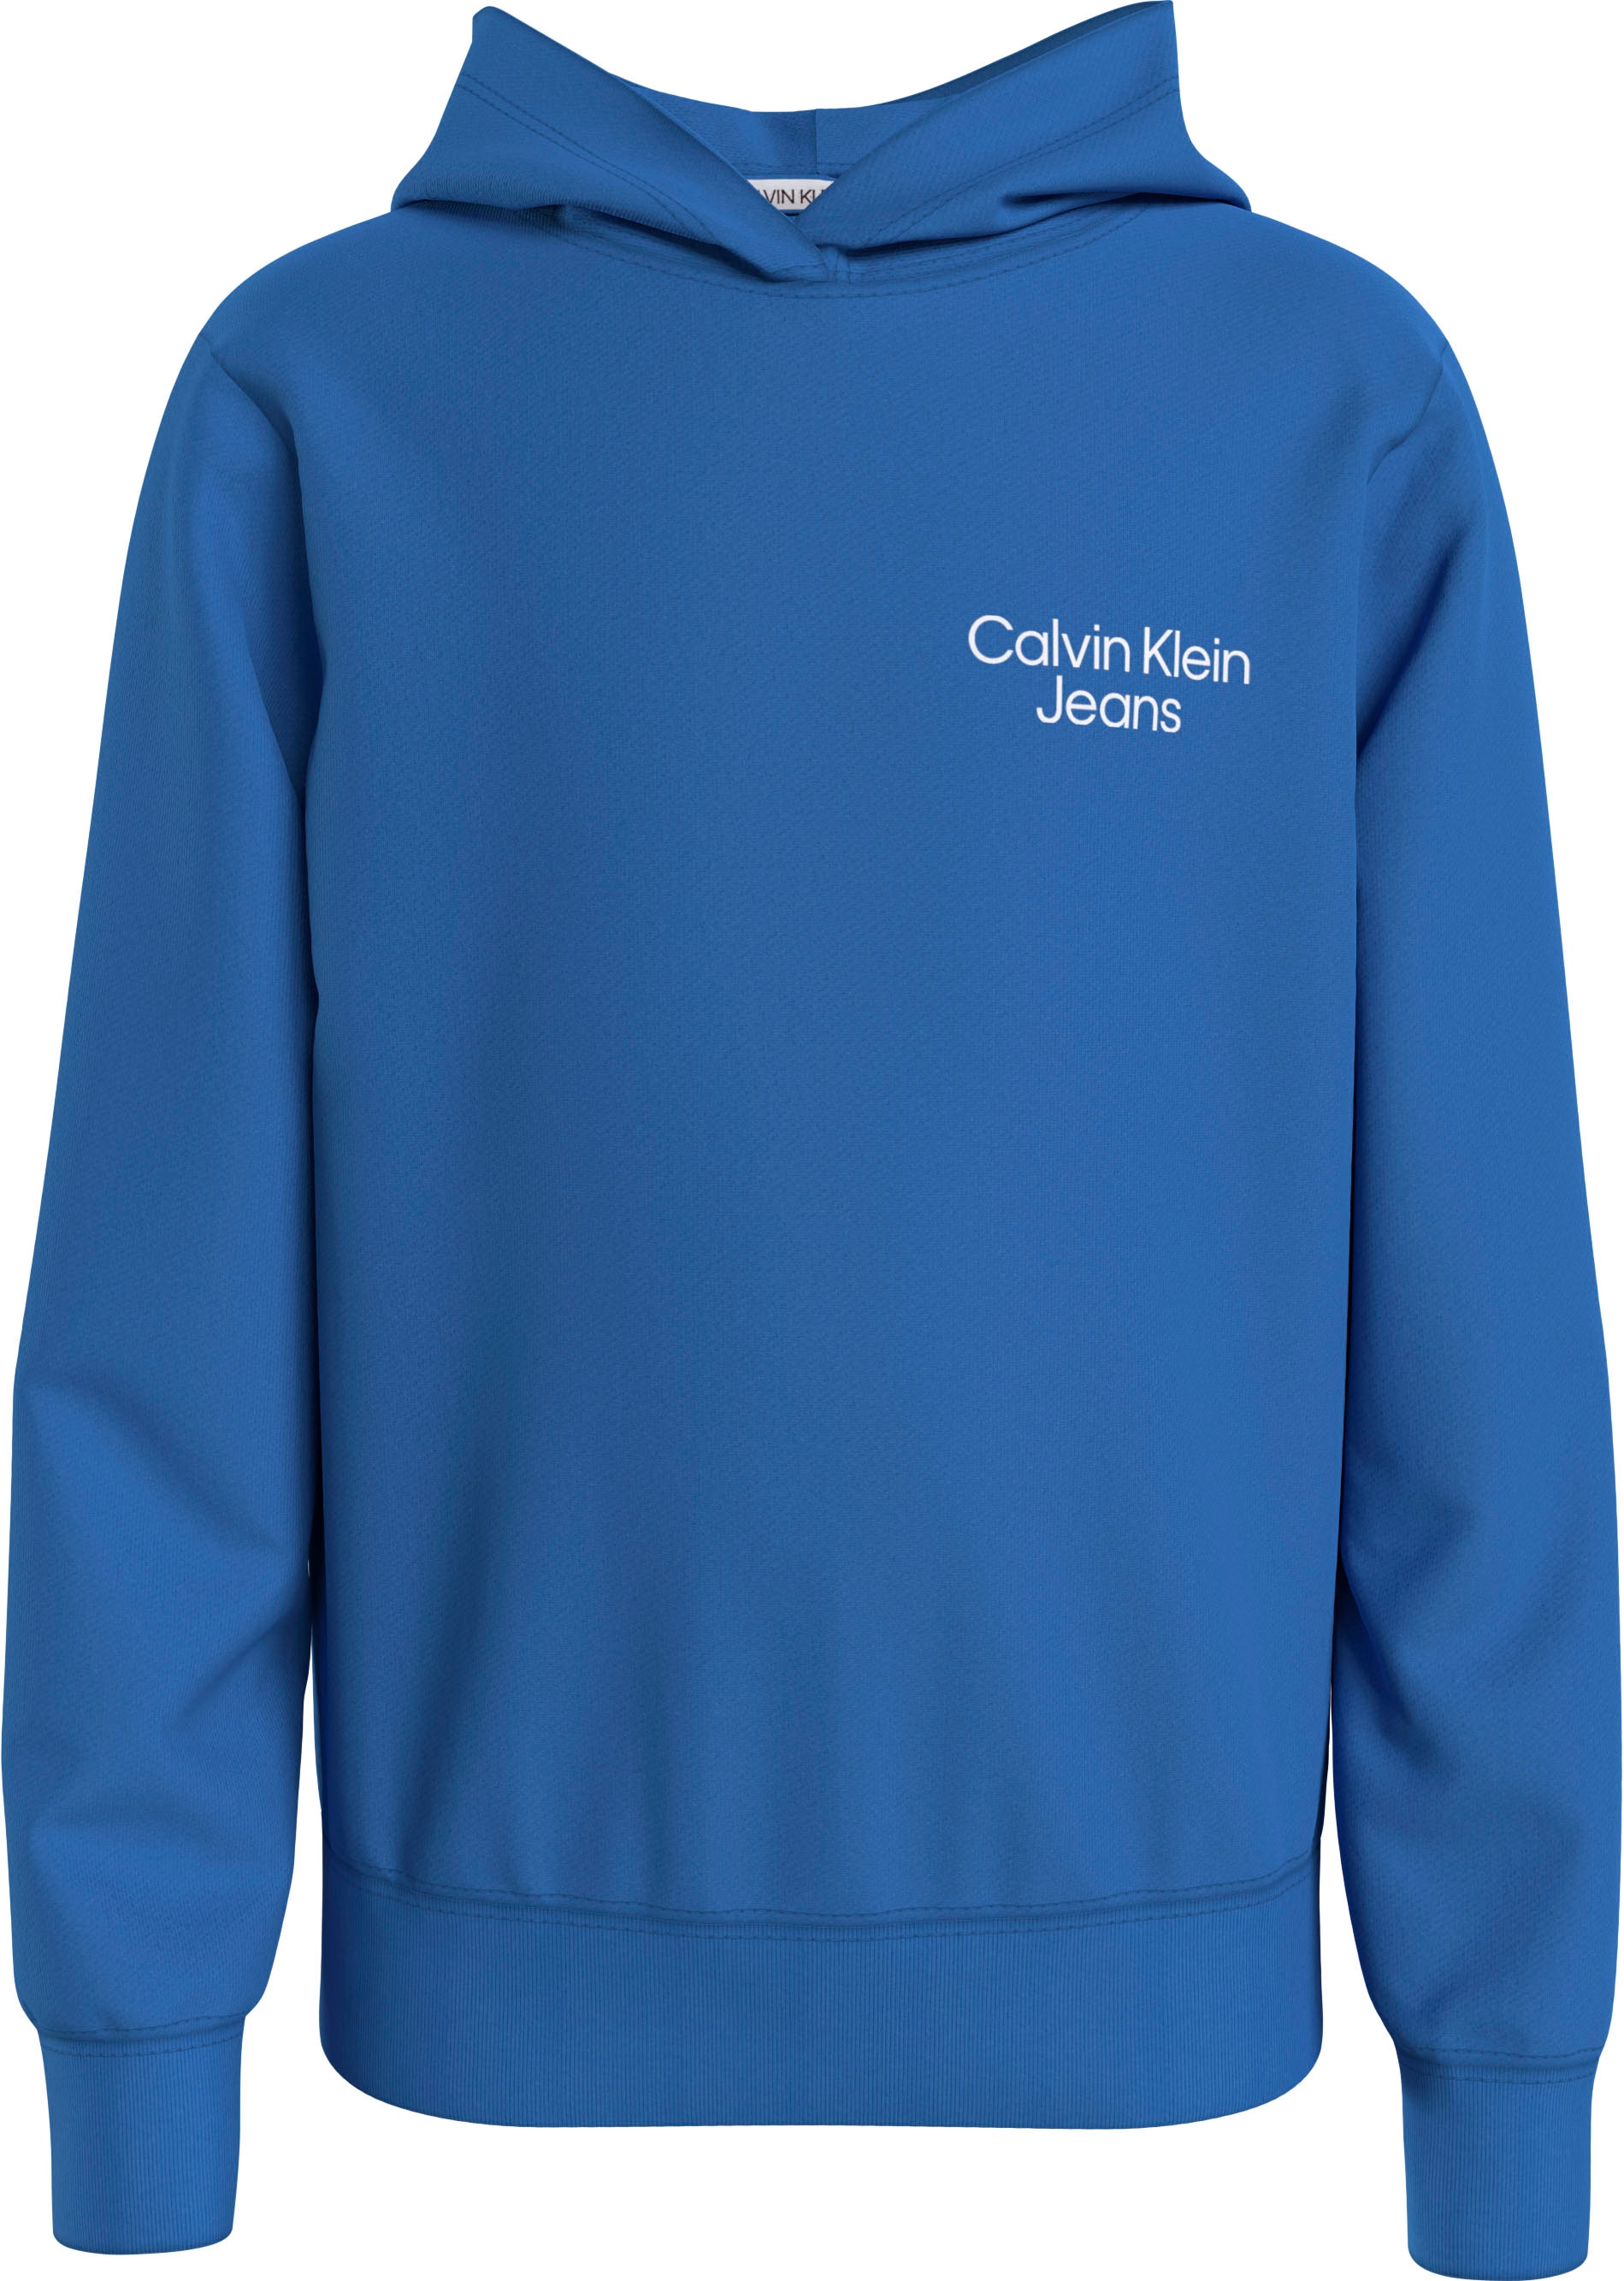 »CKJ Jeans | Klein Calvin BAUR online STACK Logodruck bestellen HOODIE«, LOGO mit Sweatshirt